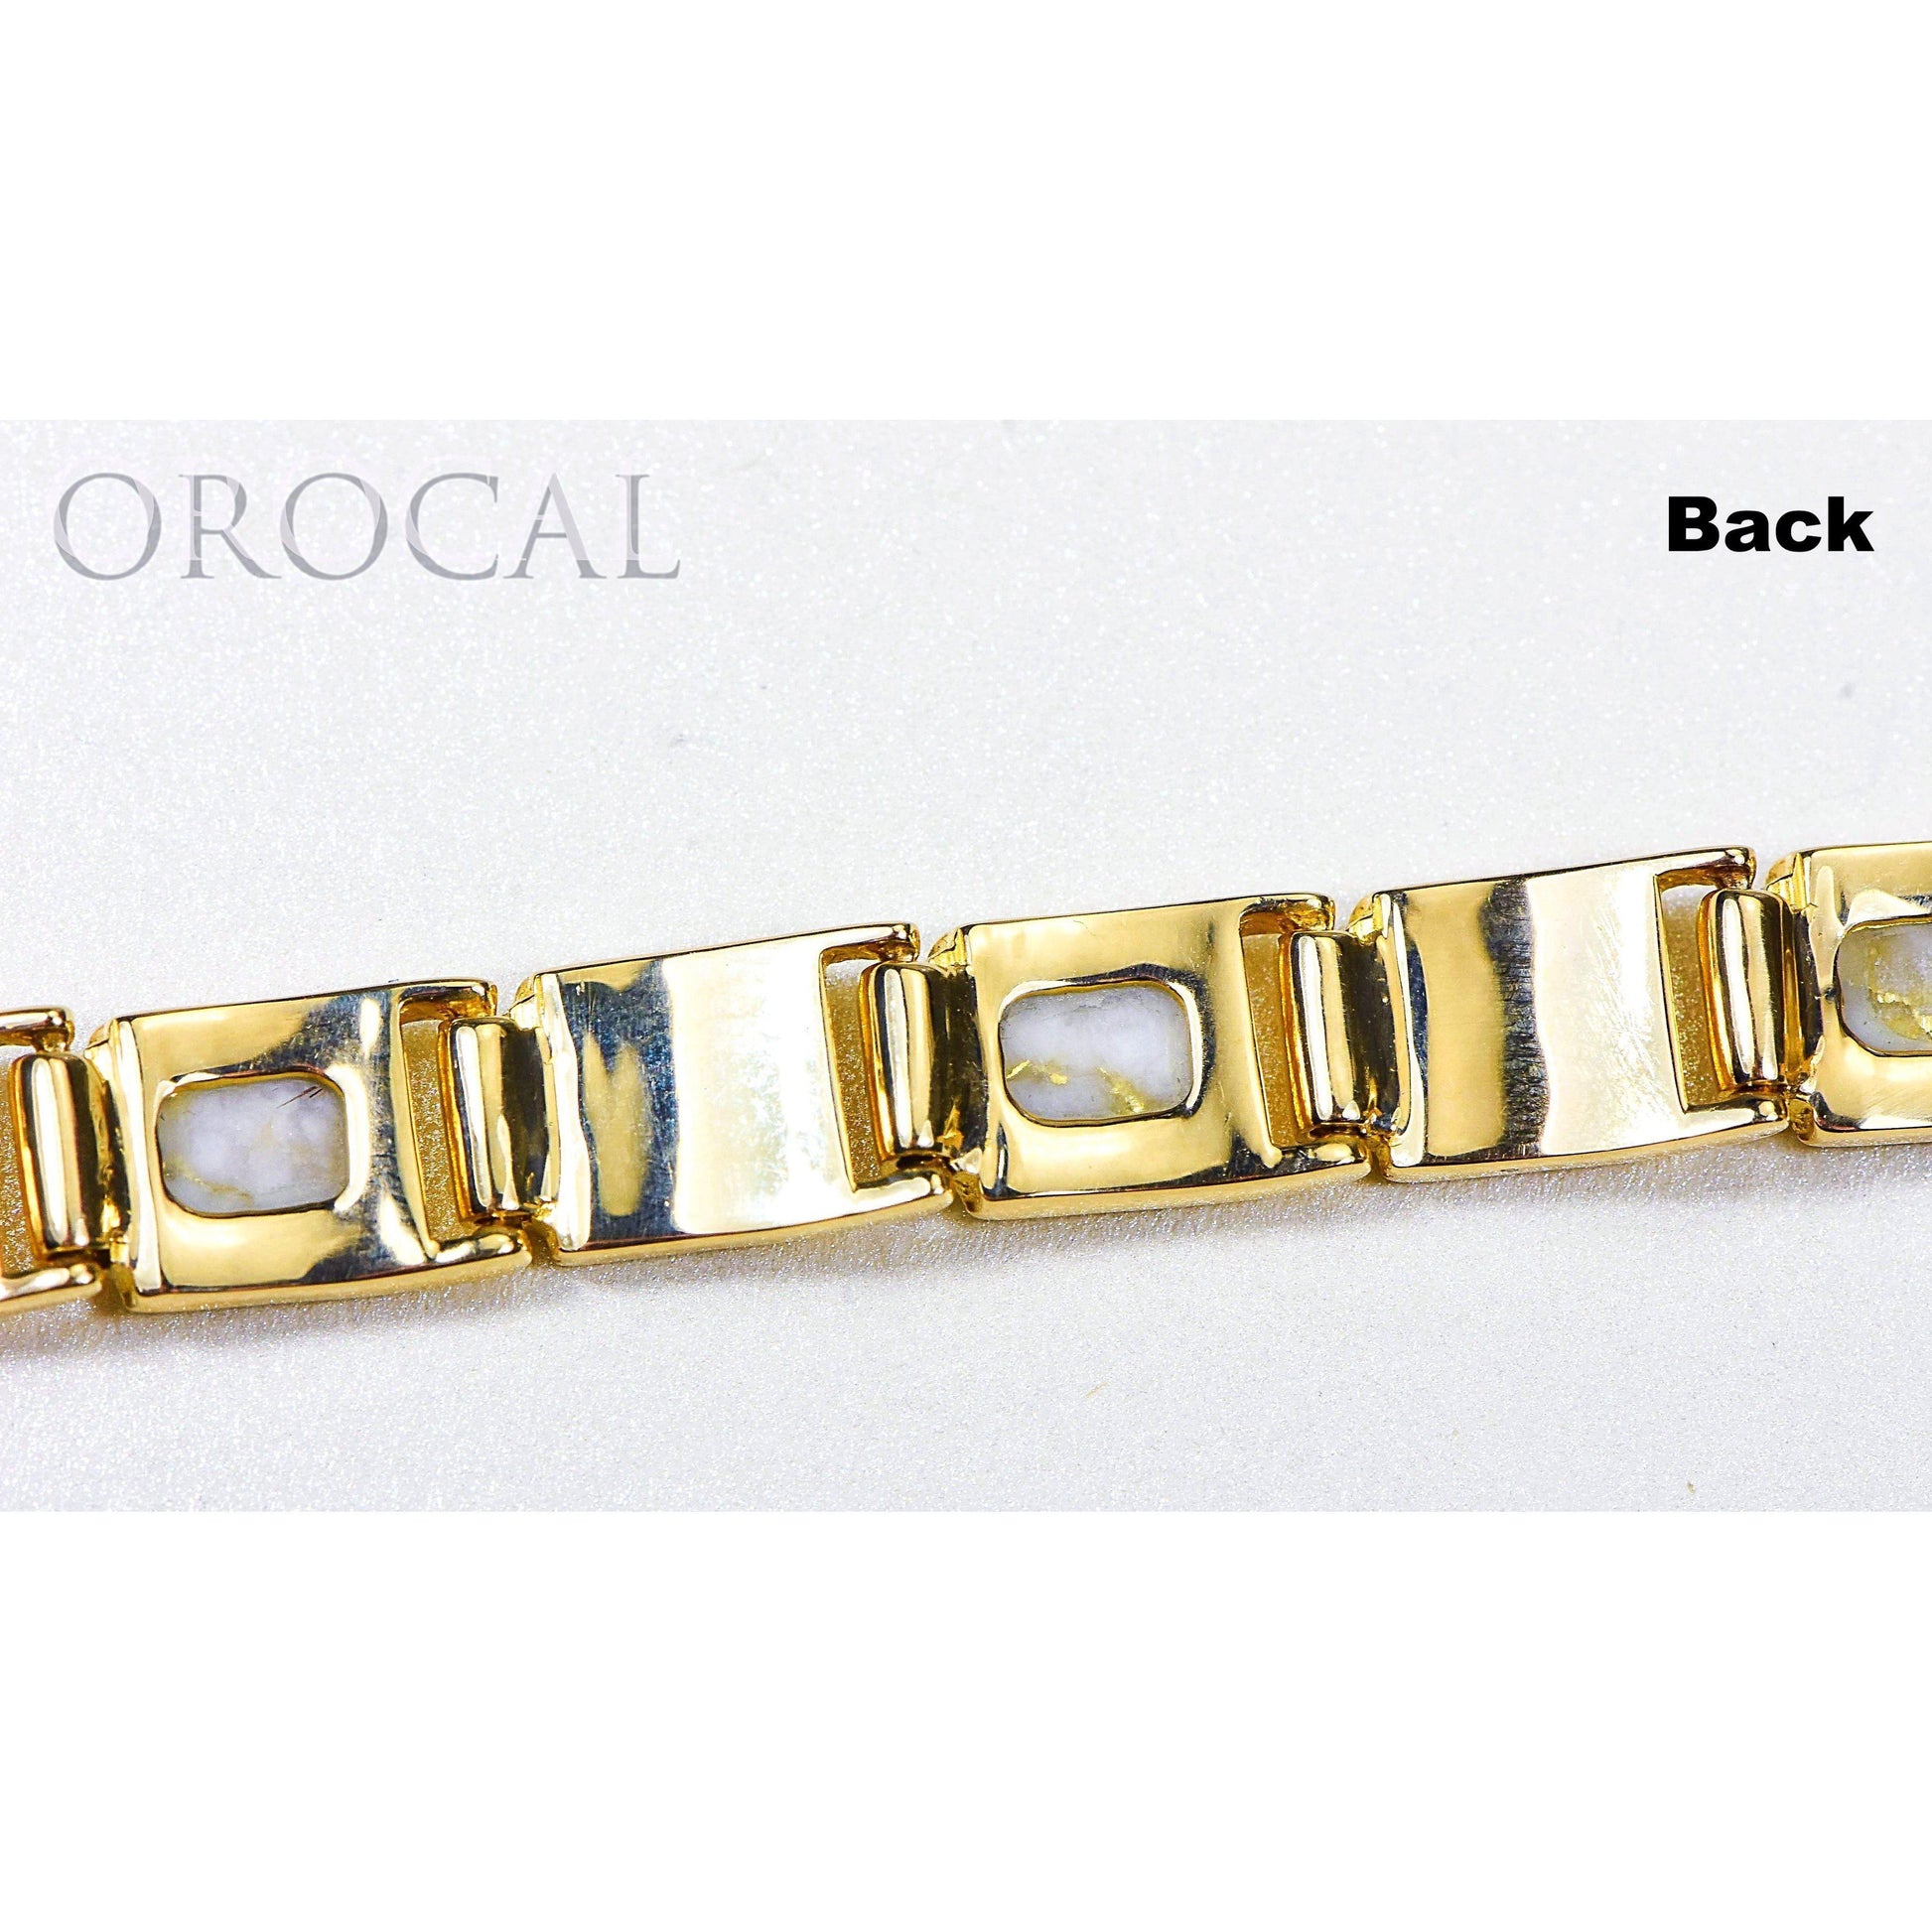 Orocal Gold Quartz Bracelet B8MM7N7Q-Destination Gold Detectors